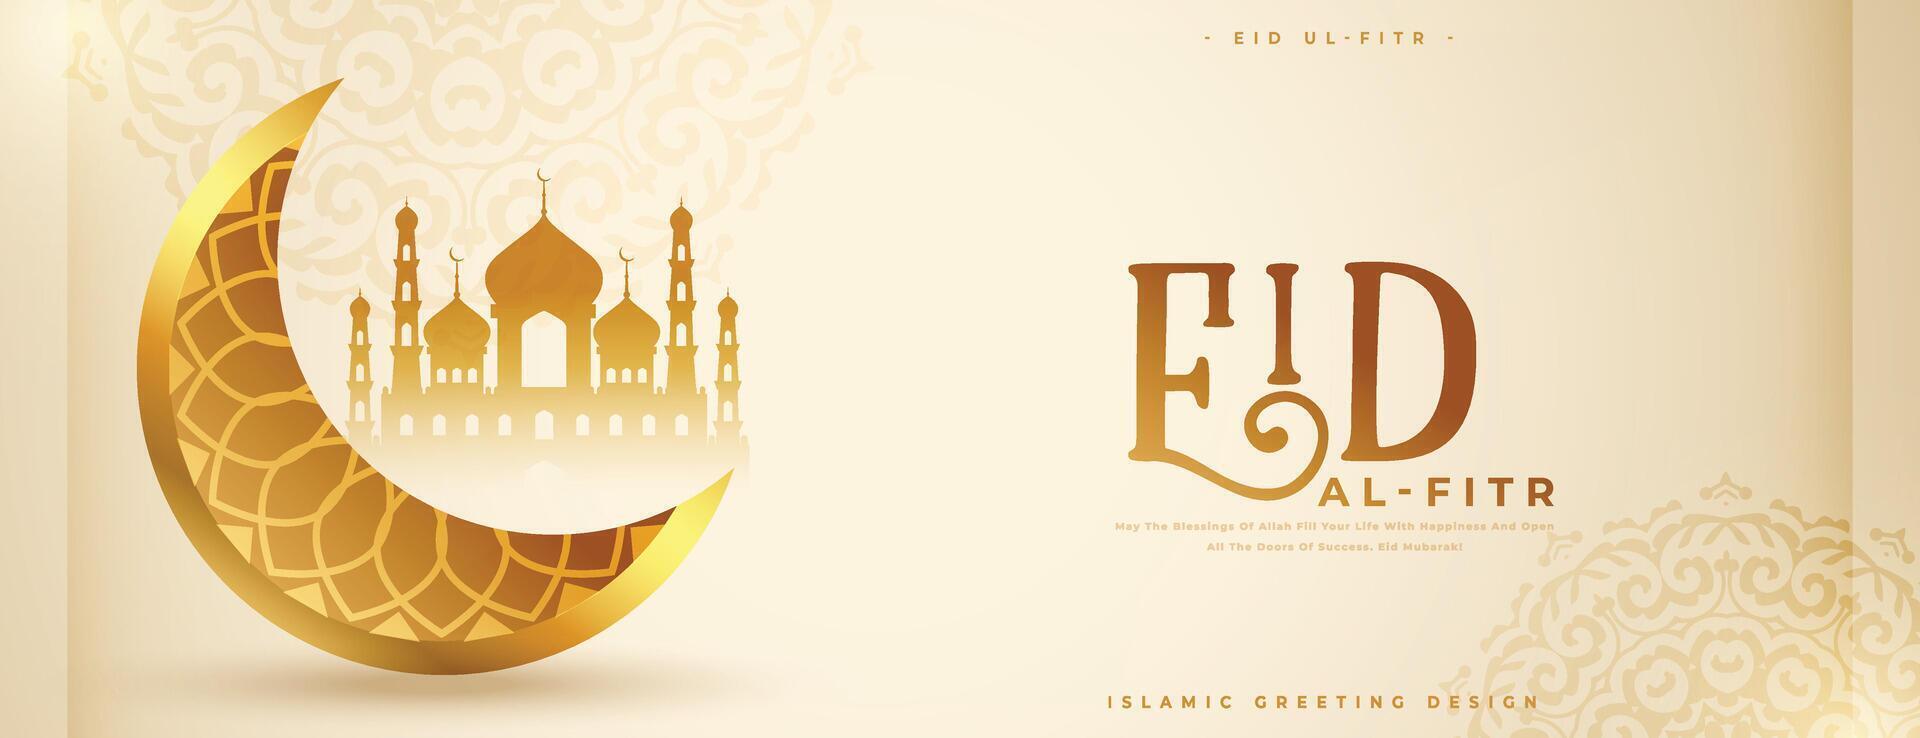 islamisch Festival eid al fitr wünscht sich Banner mit 3d golden Mond vektor